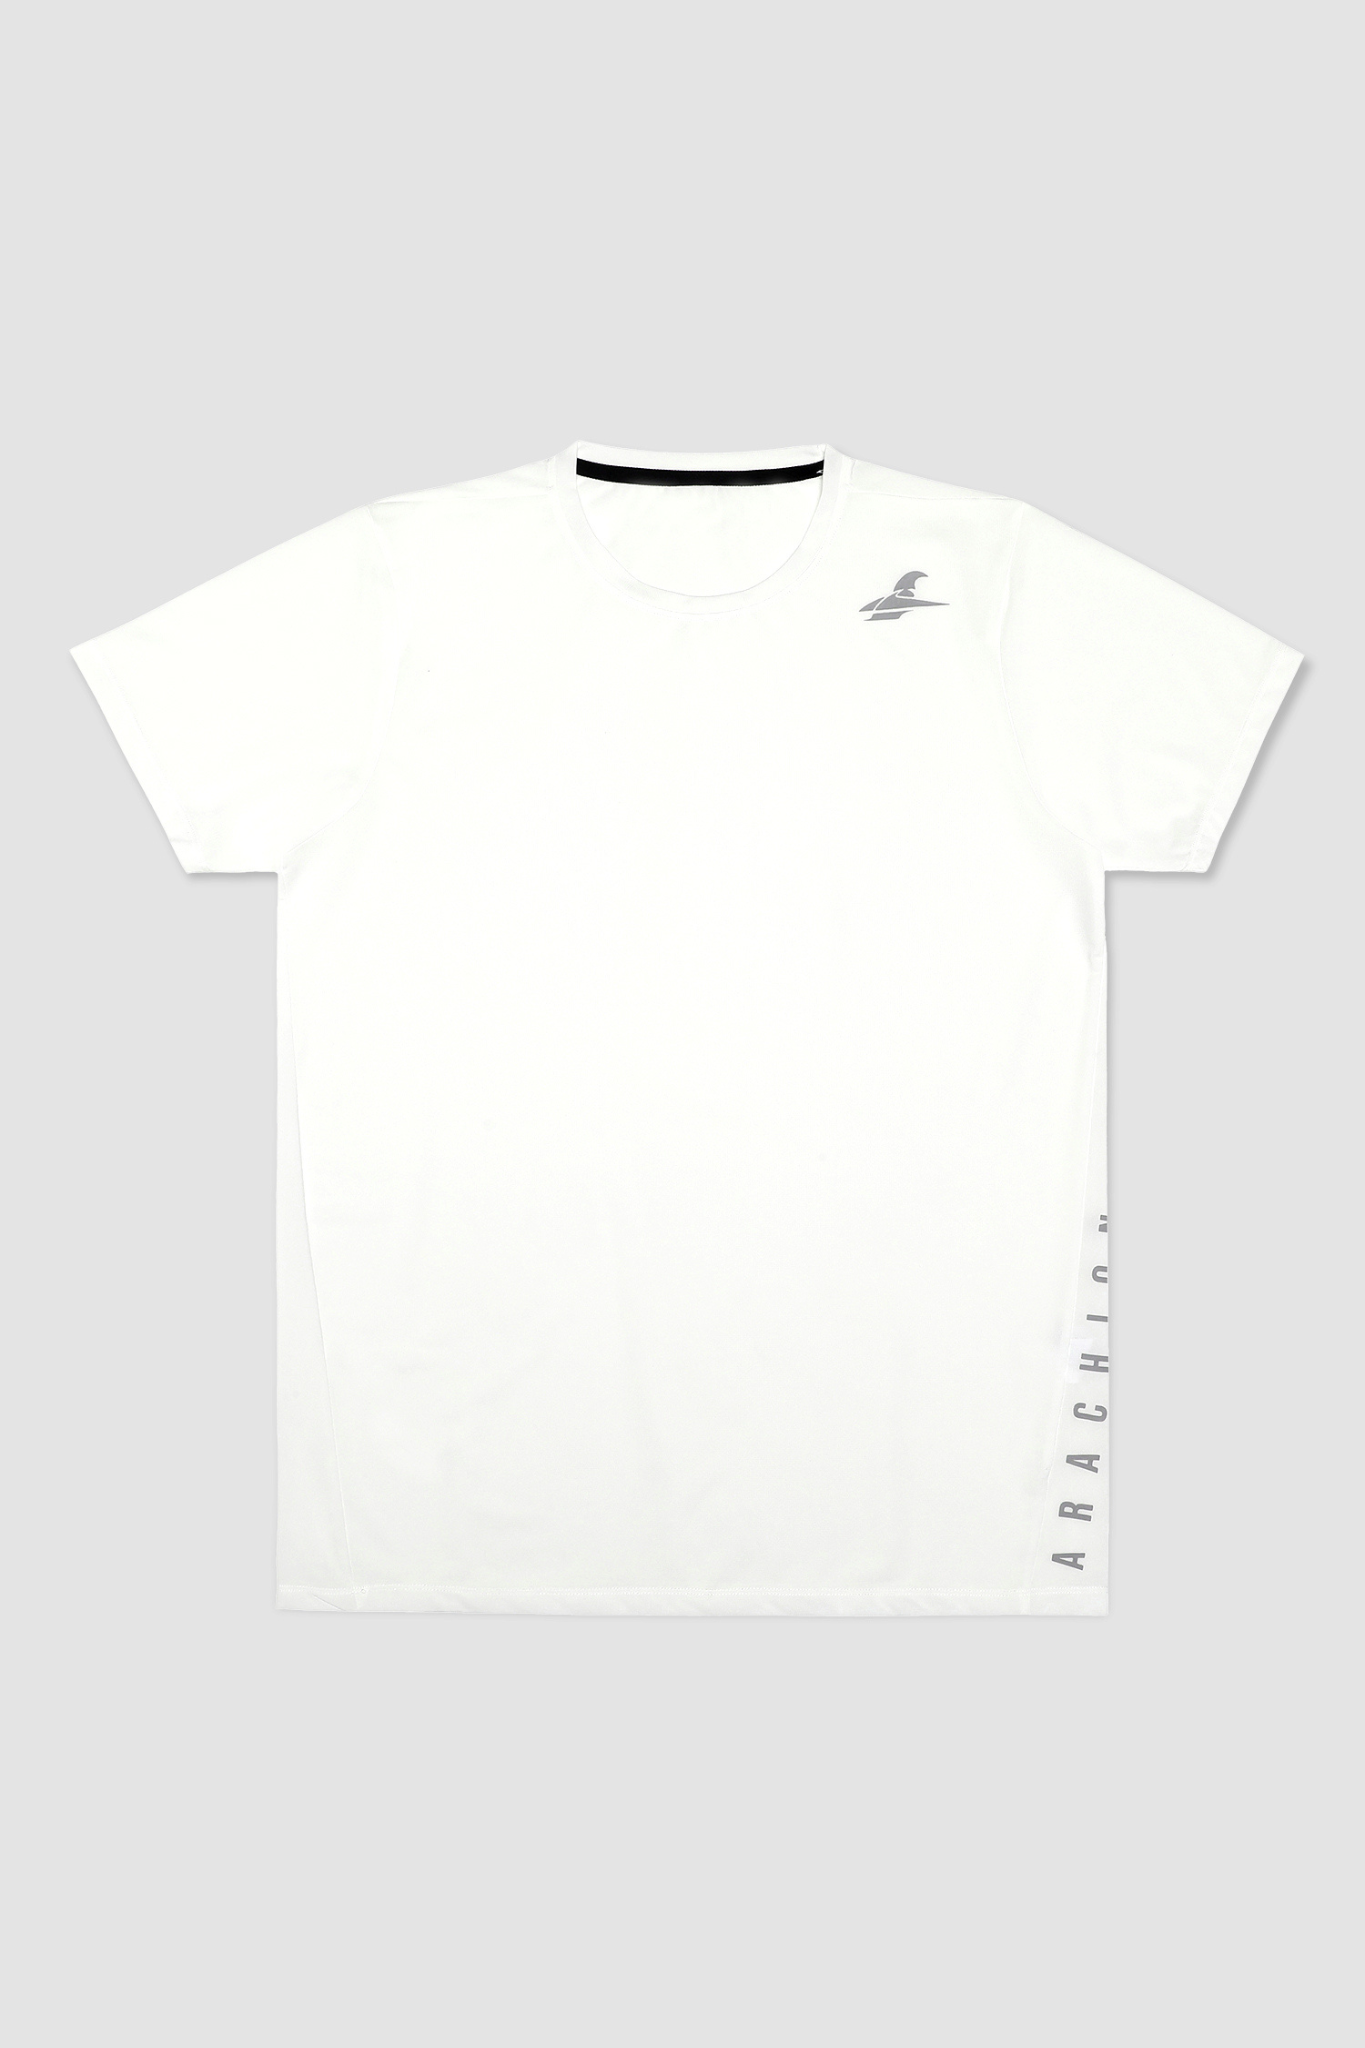 Arachion Triumph T-shirt | Porcelain White